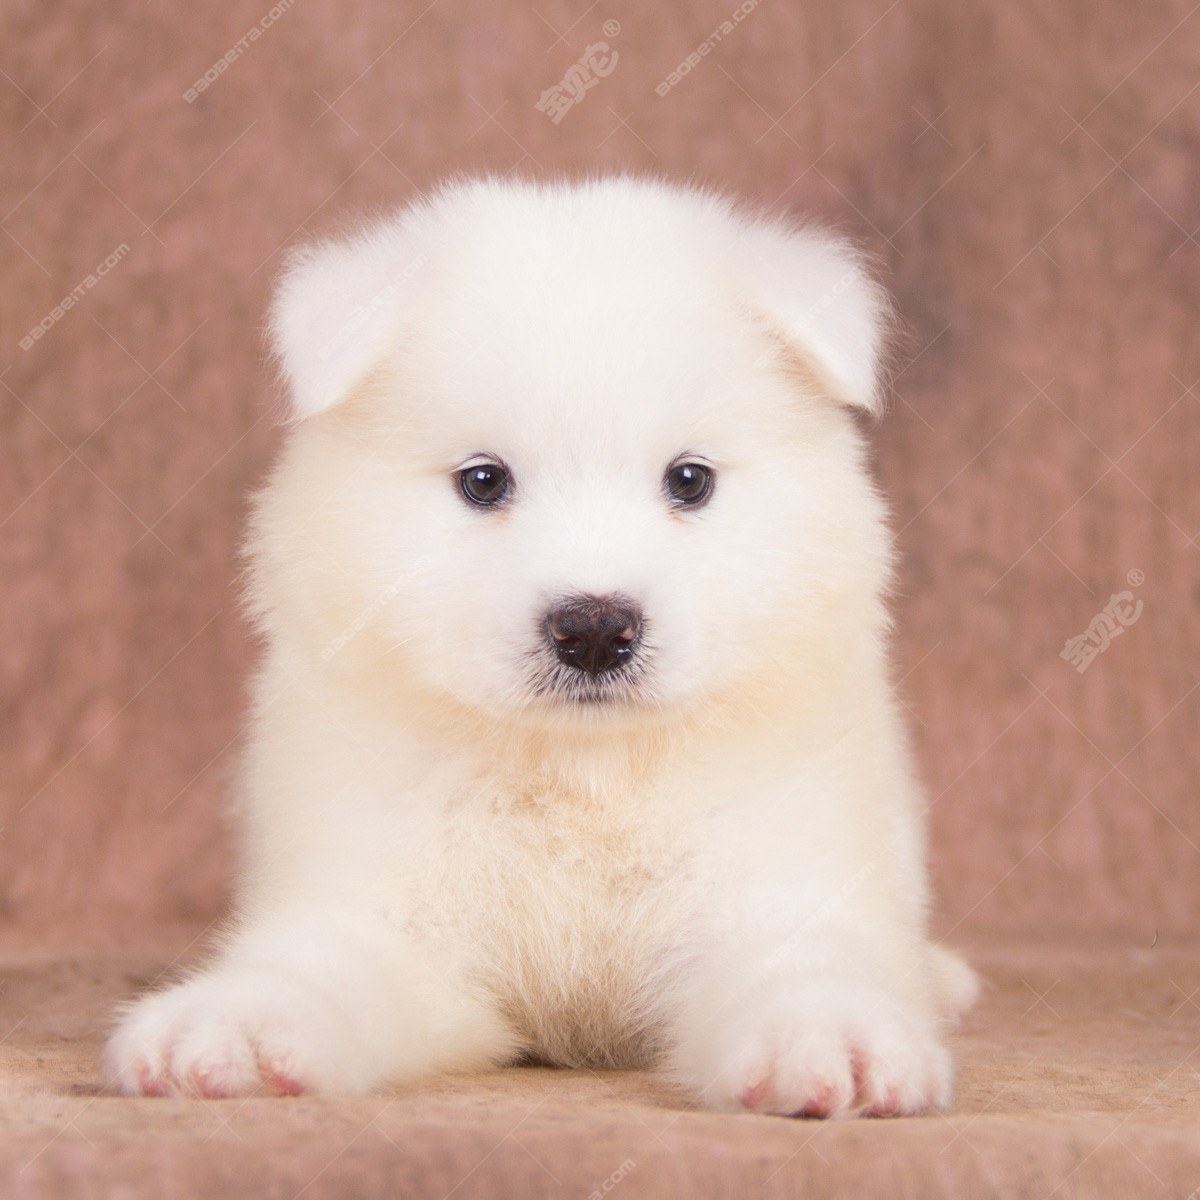 纯种萨摩耶犬幼犬狗狗出售 宠物萨摩耶犬可支付宝交易 萨摩耶犬 /编号10087400 - 宝贝它